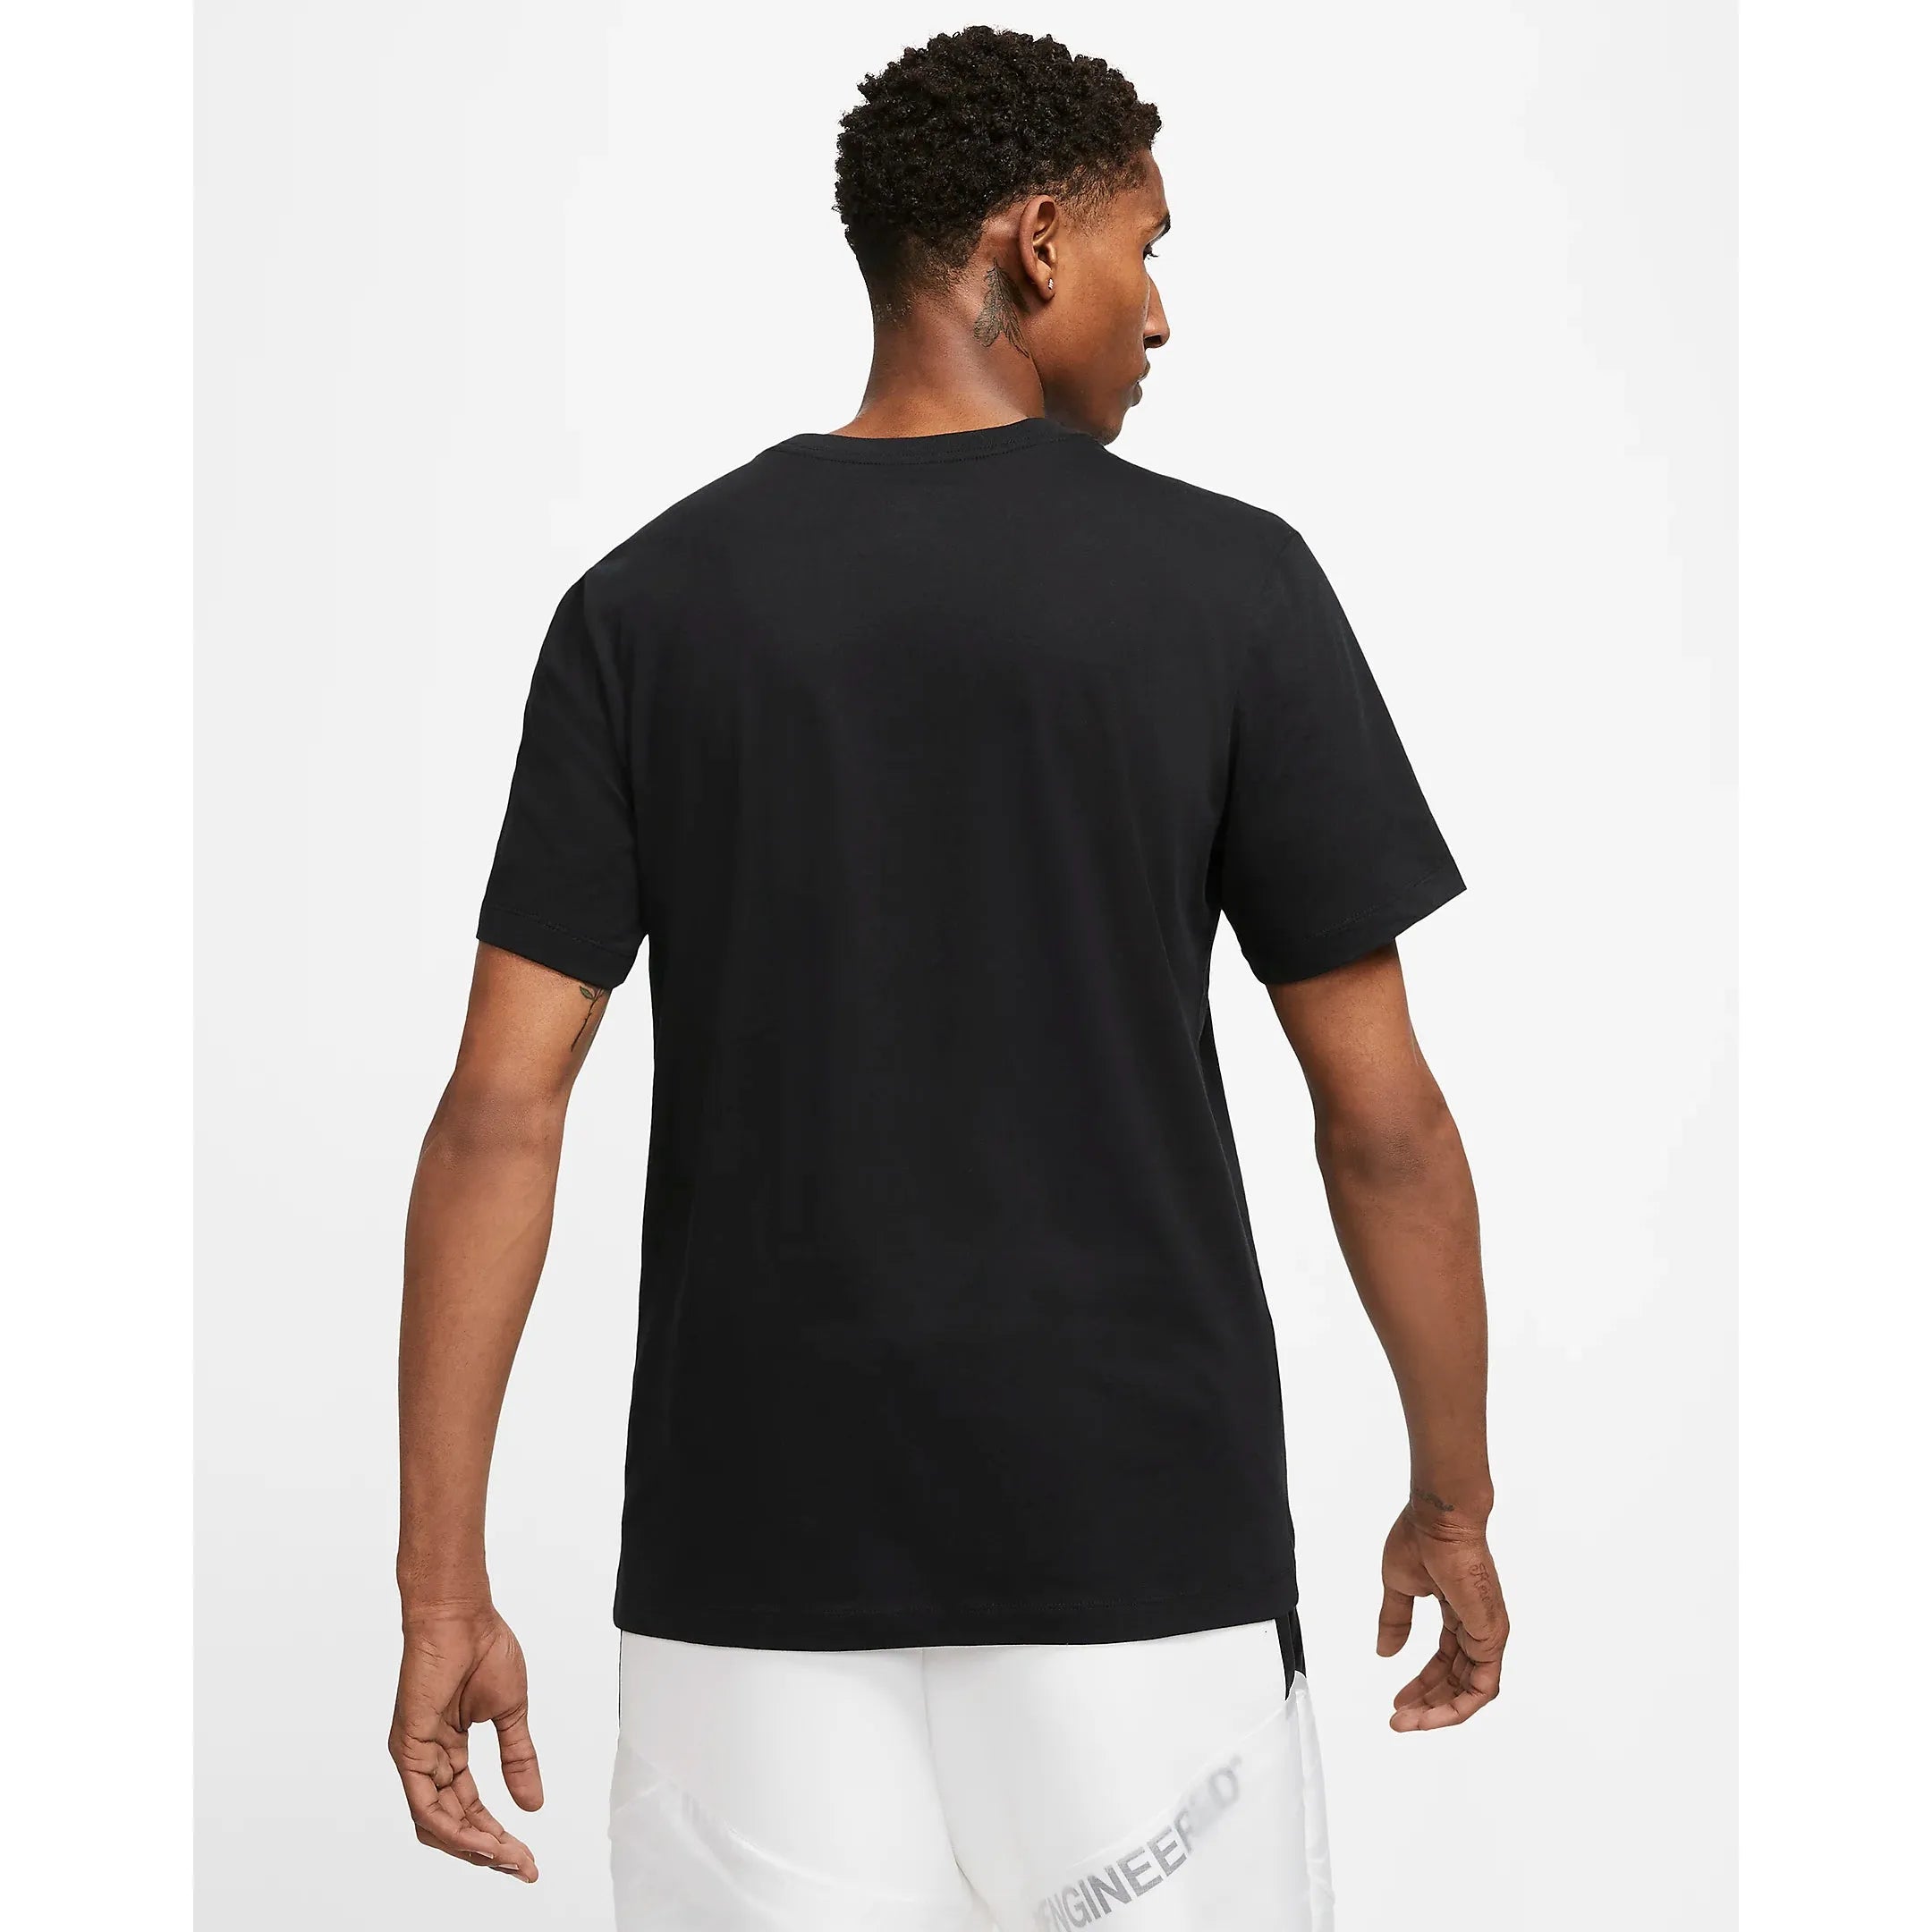 Jordan - Jumpman shirt zwart